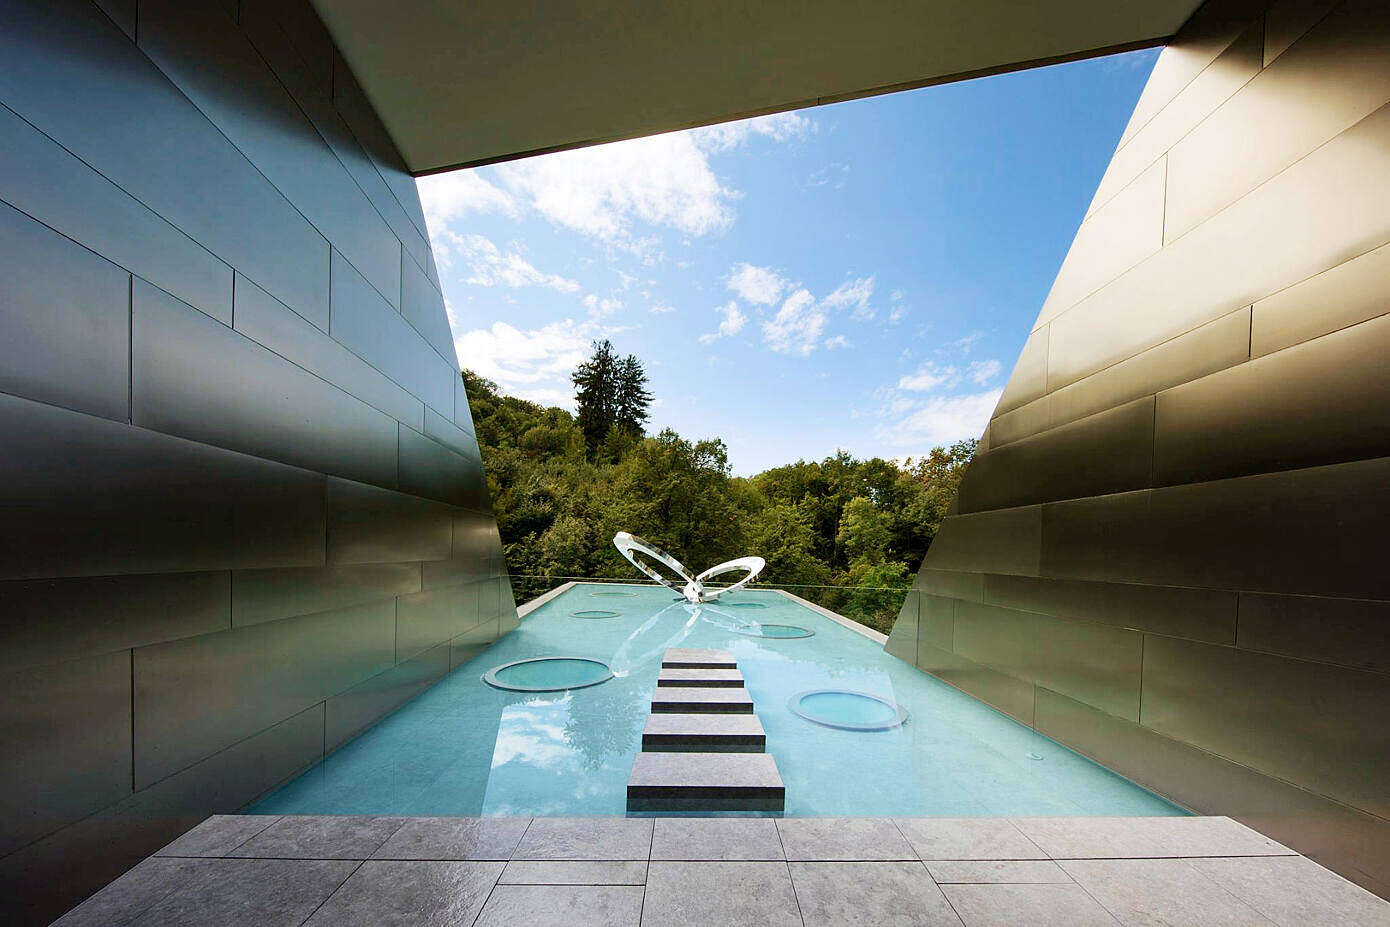 Nizza Paradise Residence by Mino Caggiula Architects